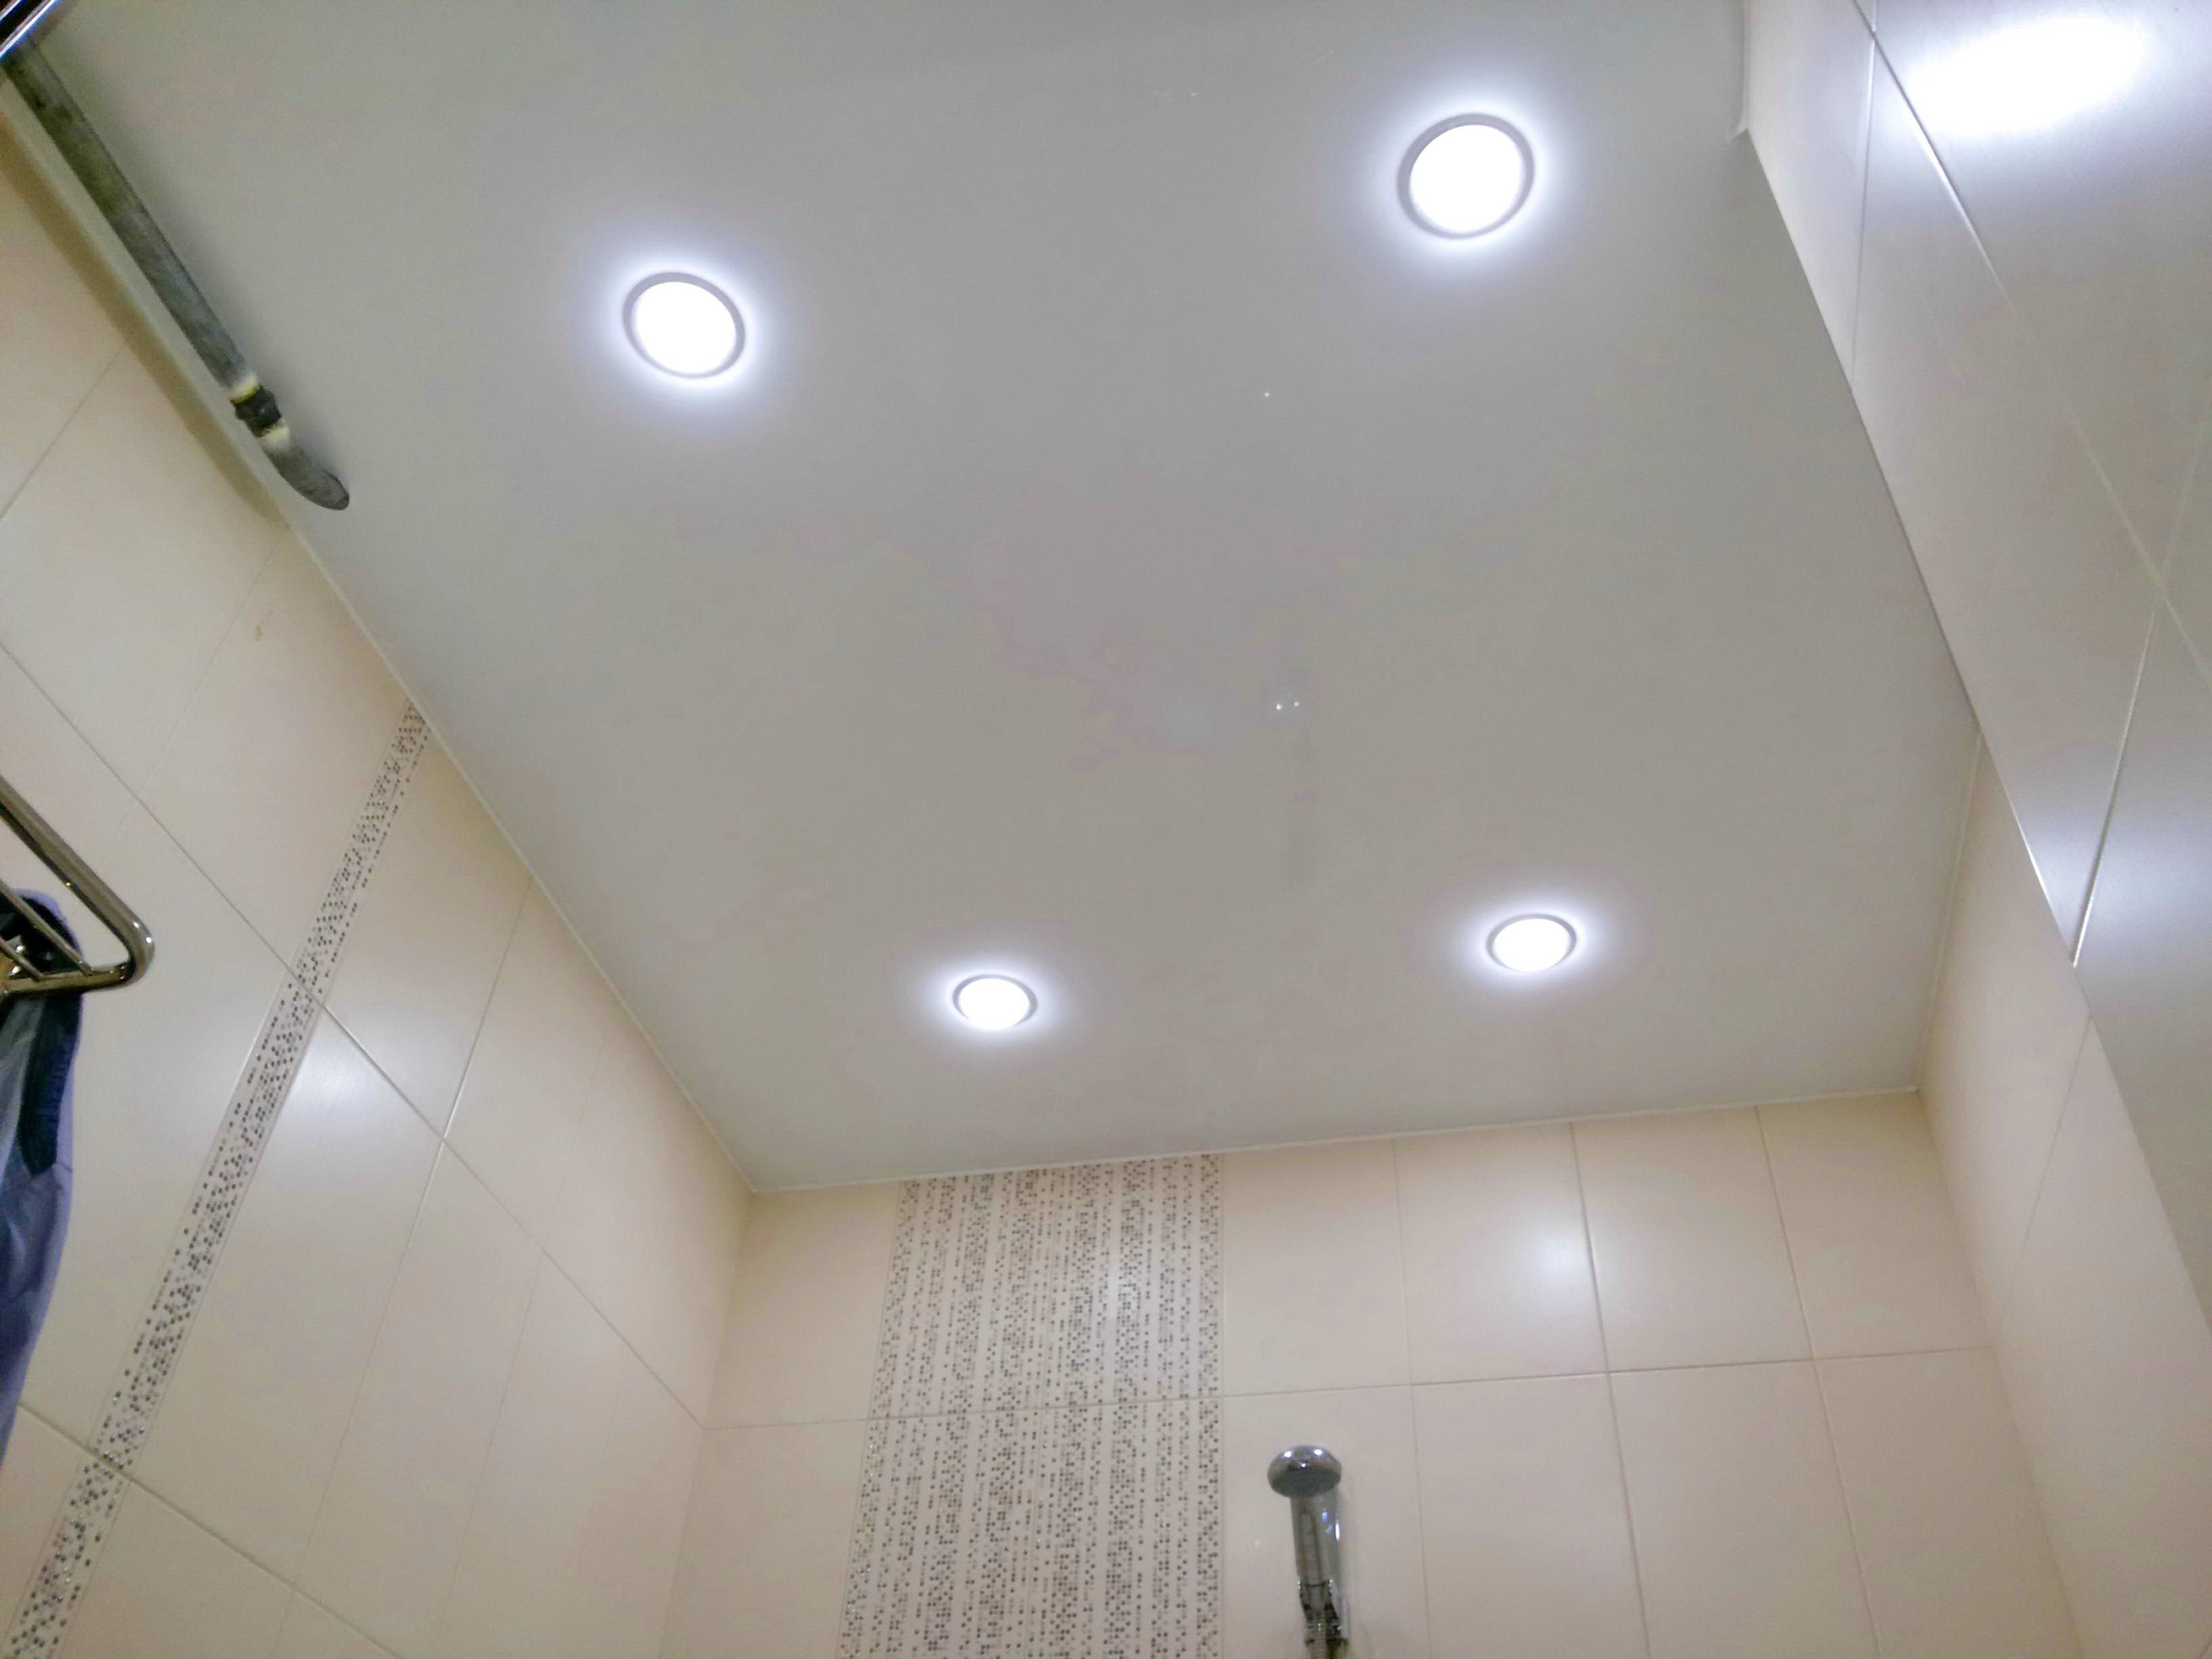 Расположение светильников на натяжном потолке: схемы и примеры (100+ фото)